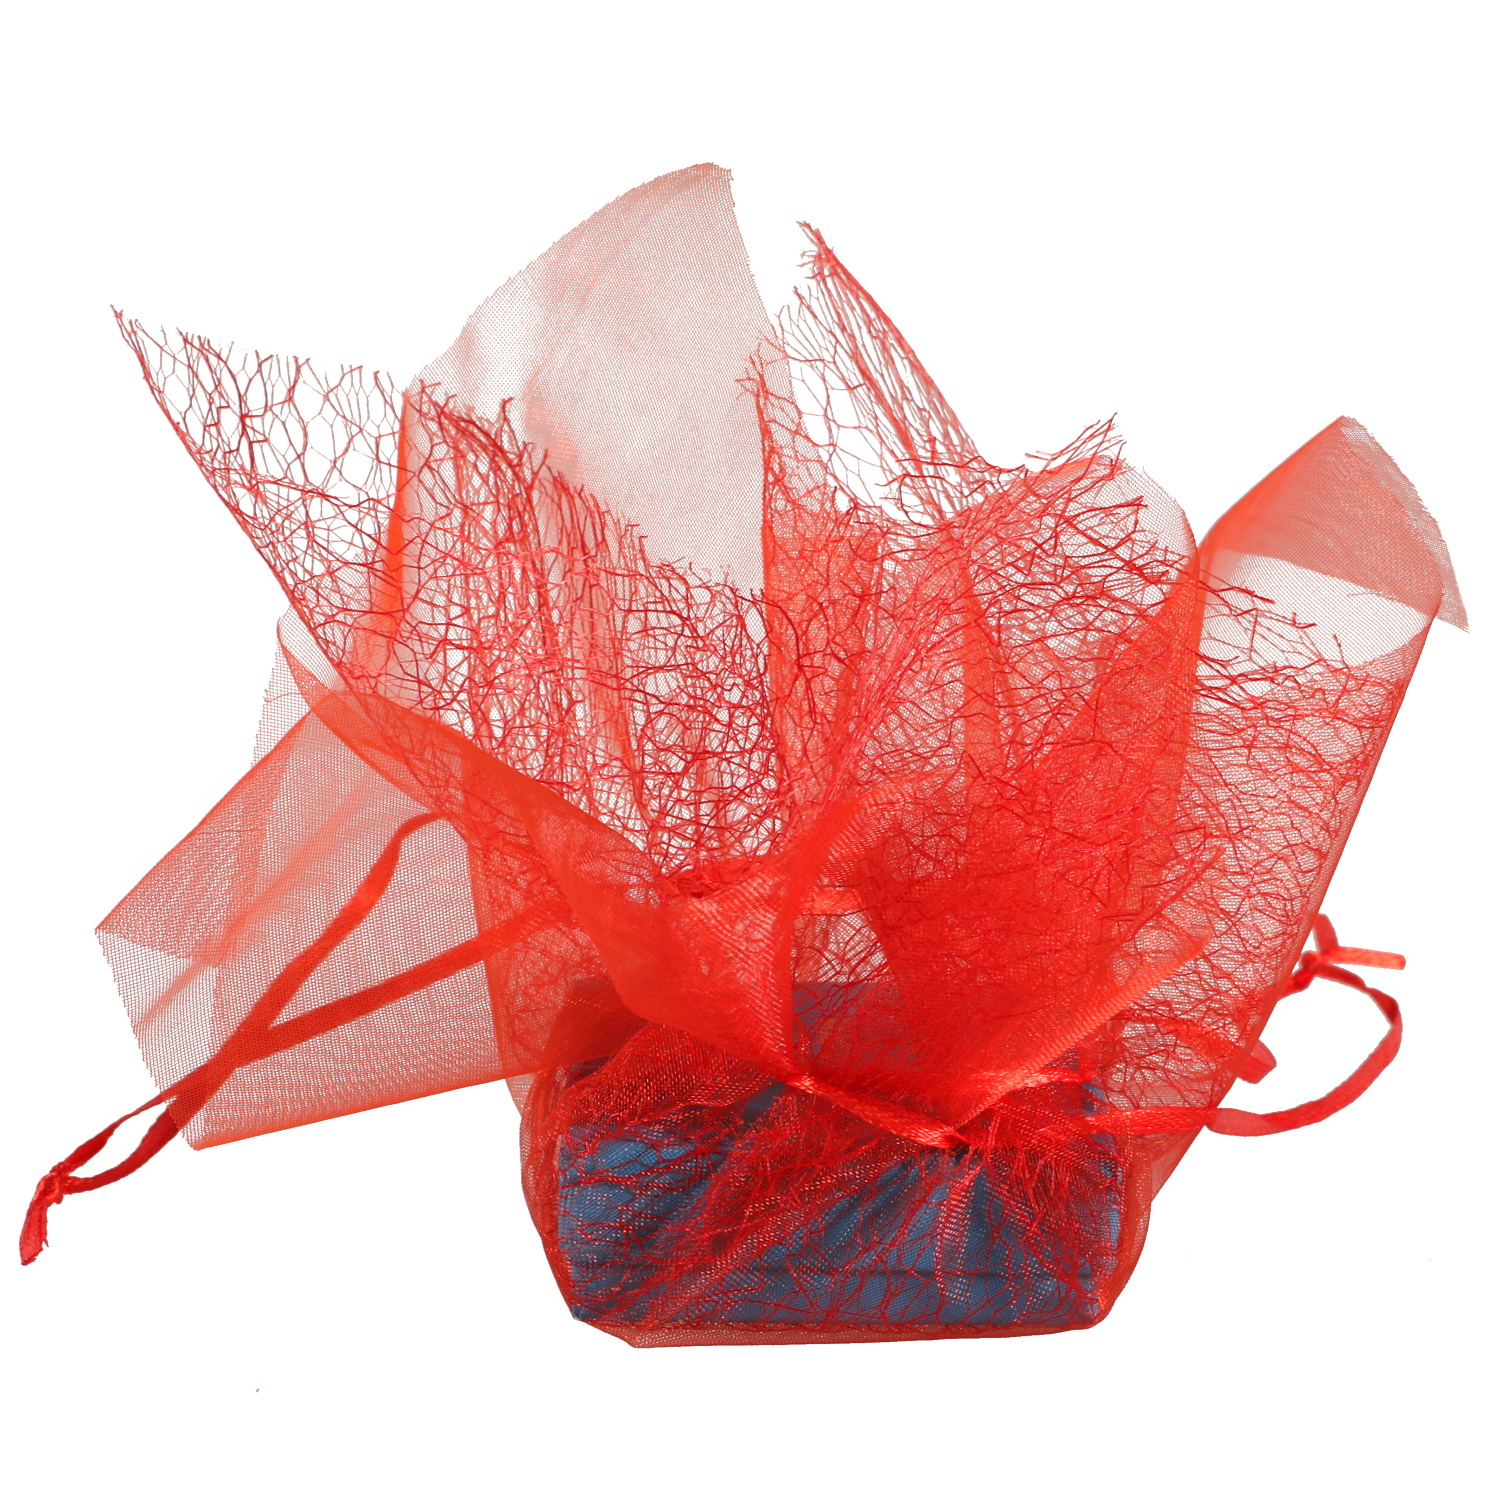 Pochette emballage cadeau en organza de couleur rouge.<br/>Idéal pour écrin et boite cadeau pour bague, parure et collier.  Adolescent Adulte Enfant Femme Fille Garçon Homme Indémodable Mixte 